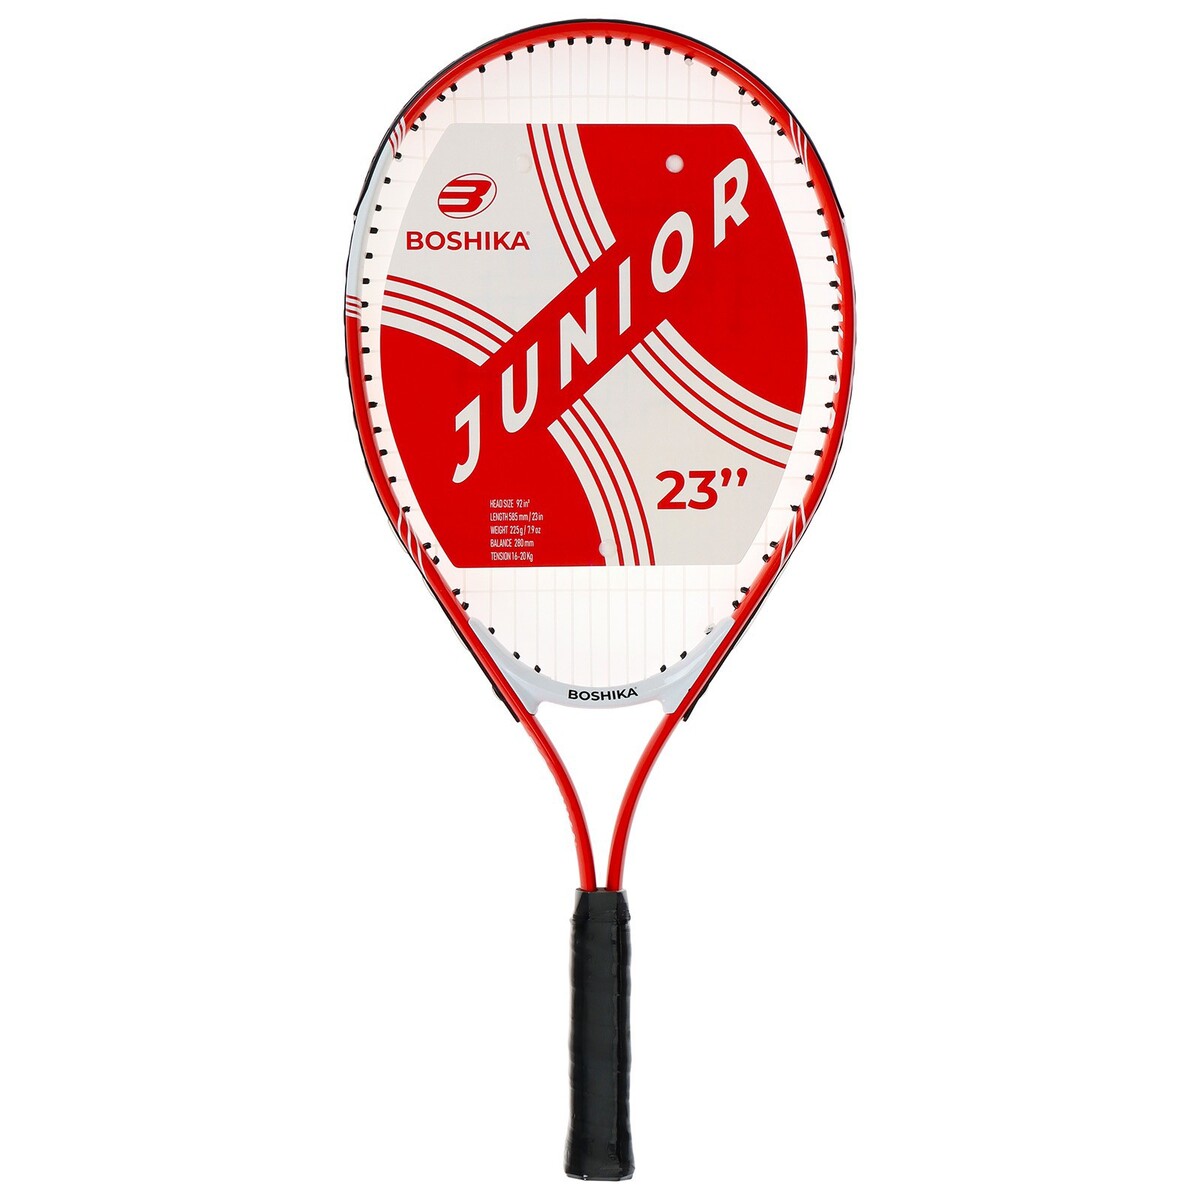 Ракетка для большого тенниса детская boshika junior, алюминий, 23'', цвет красный x match ракетки для большого тенниса 2 шт и мяч